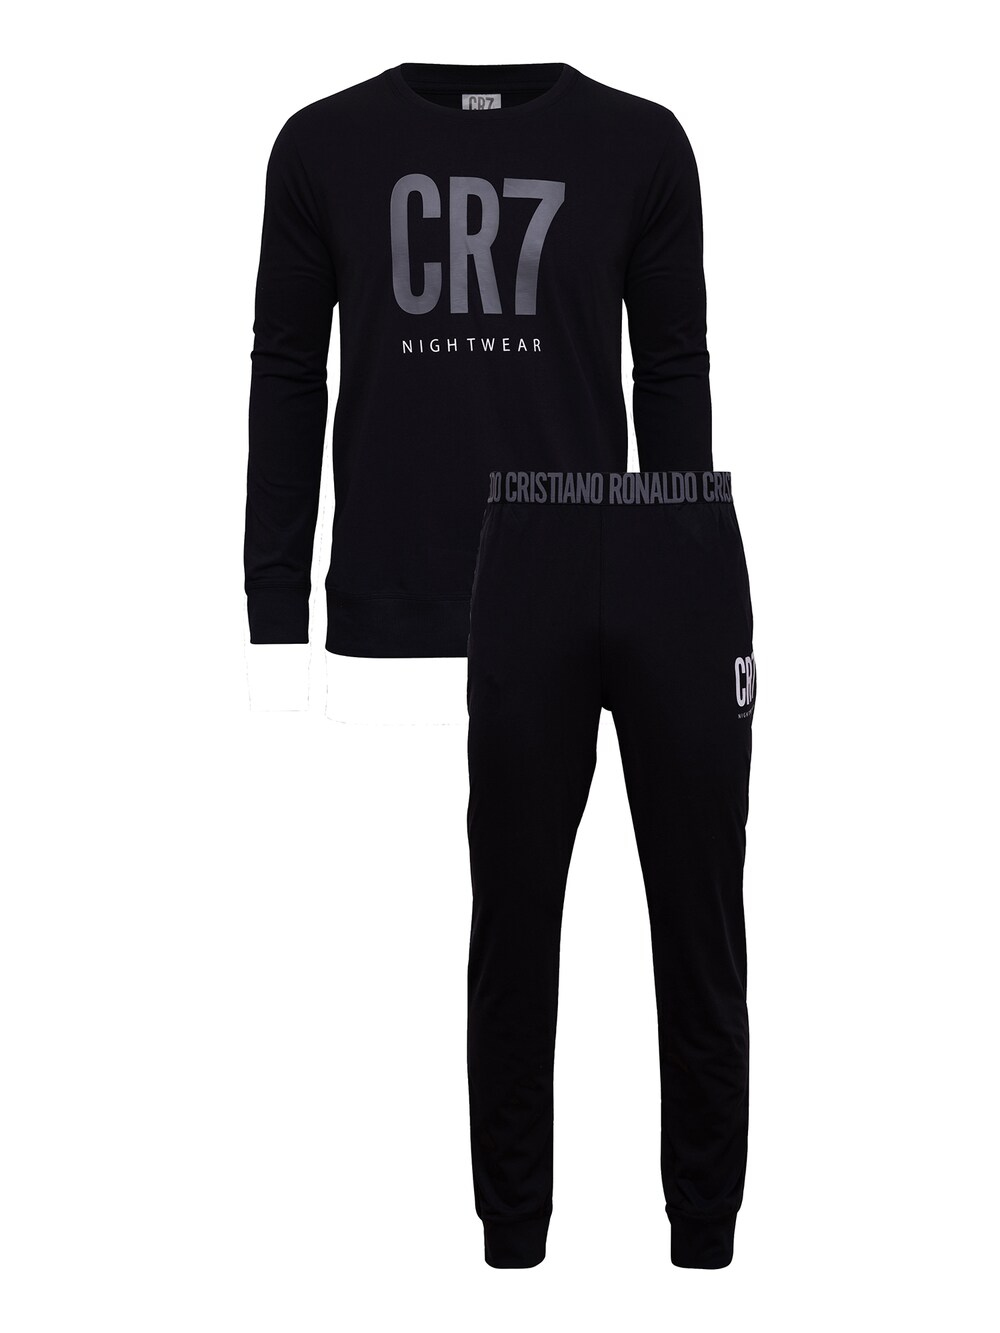 Длинная пижама CR7 - Cristiano Ronaldo Homewear, черный фотографии